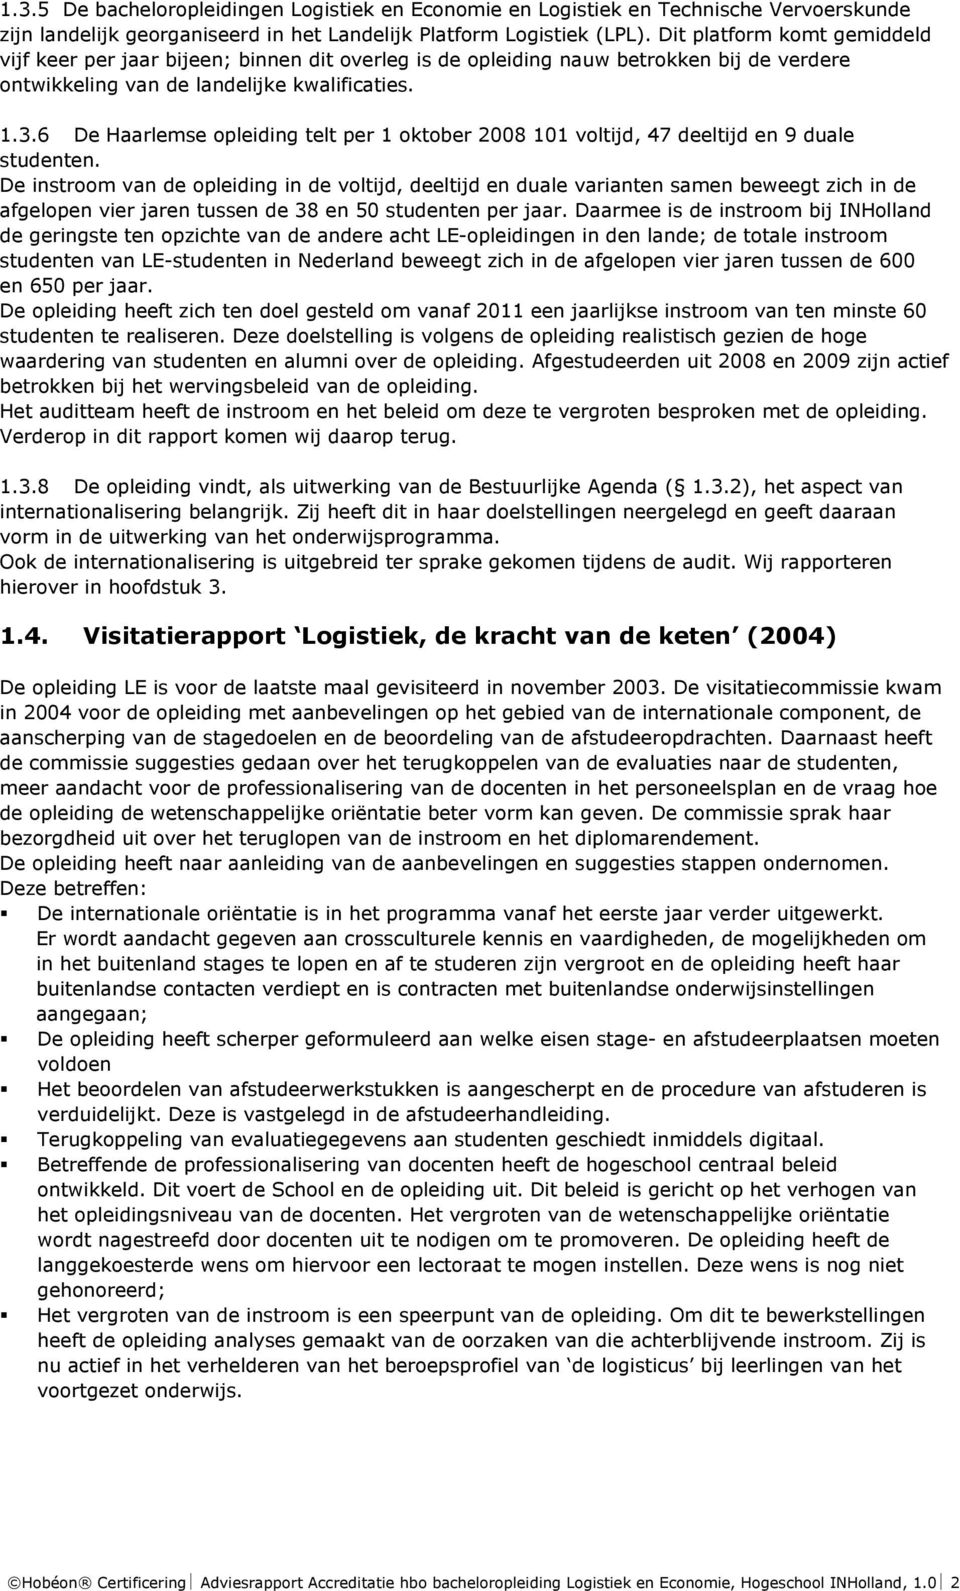 6 De Haarlemse opleiding telt per 1 oktober 2008 101 voltijd, 47 deeltijd en 9 duale studenten.